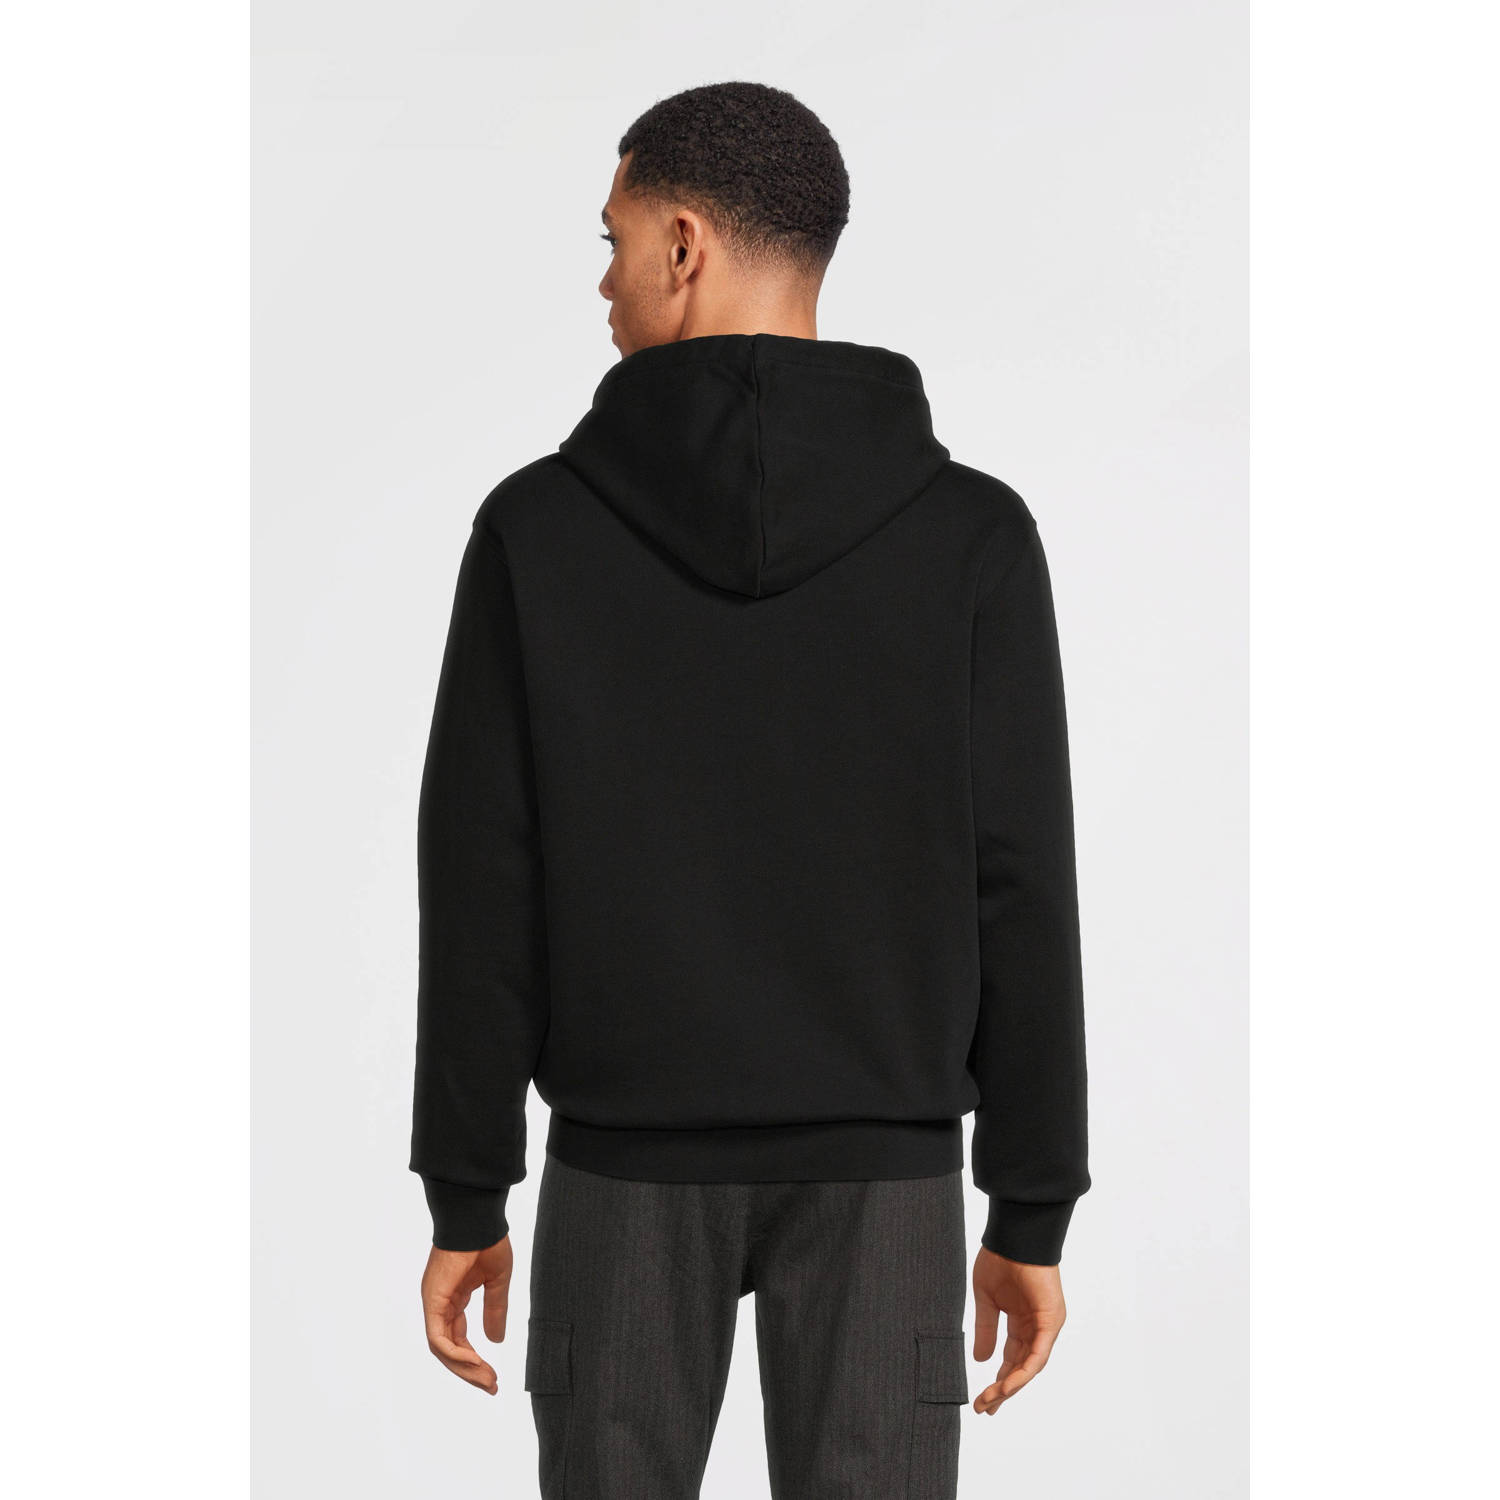 REPLAY hoodie met logo black